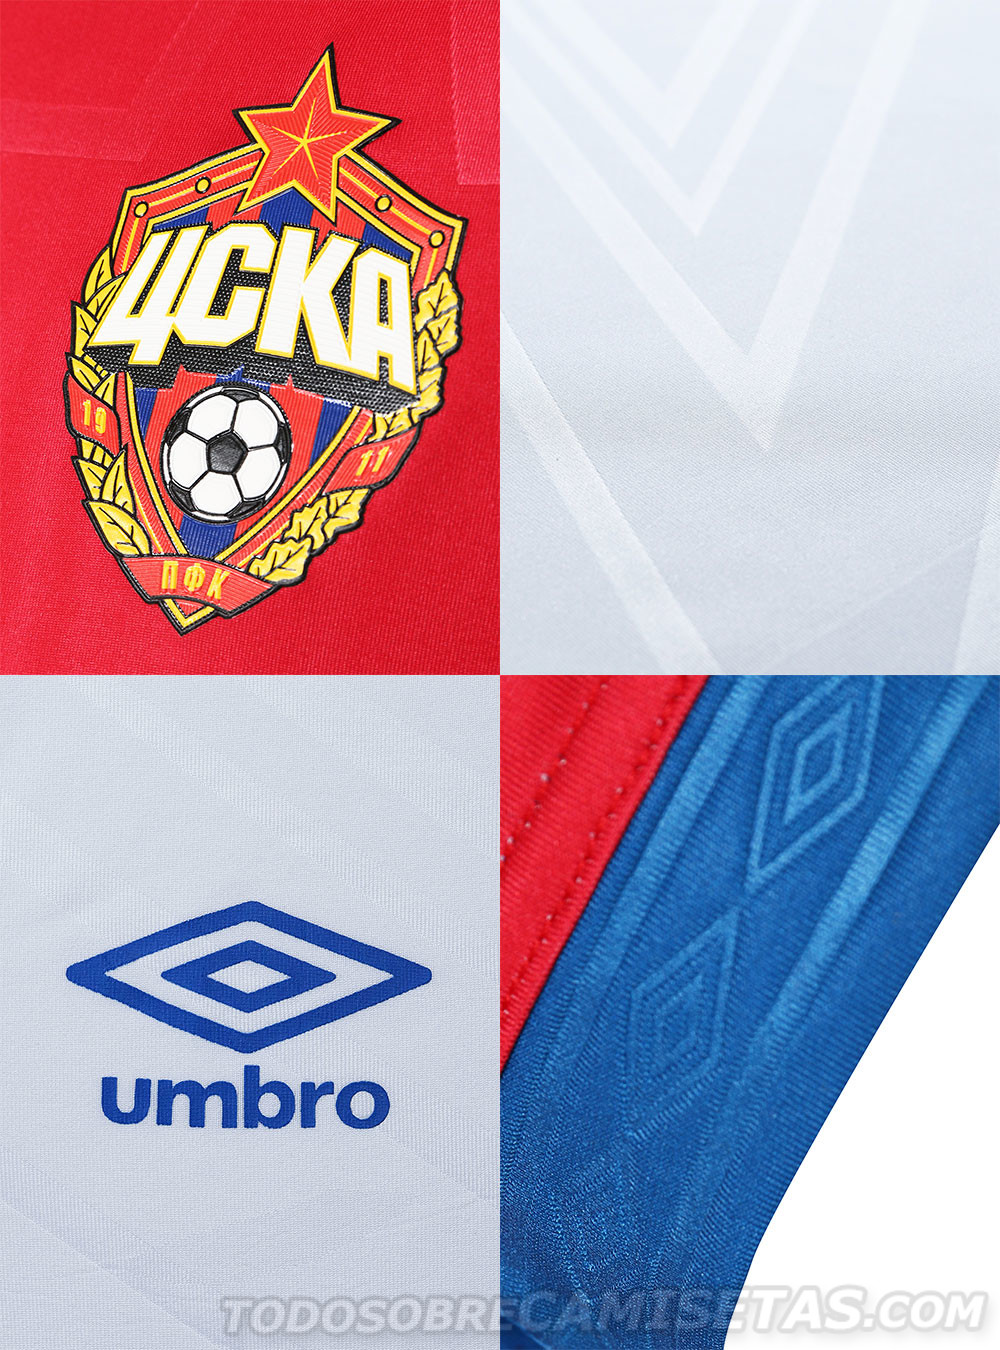 CSKA Moscow Umbro Kits 2019-20